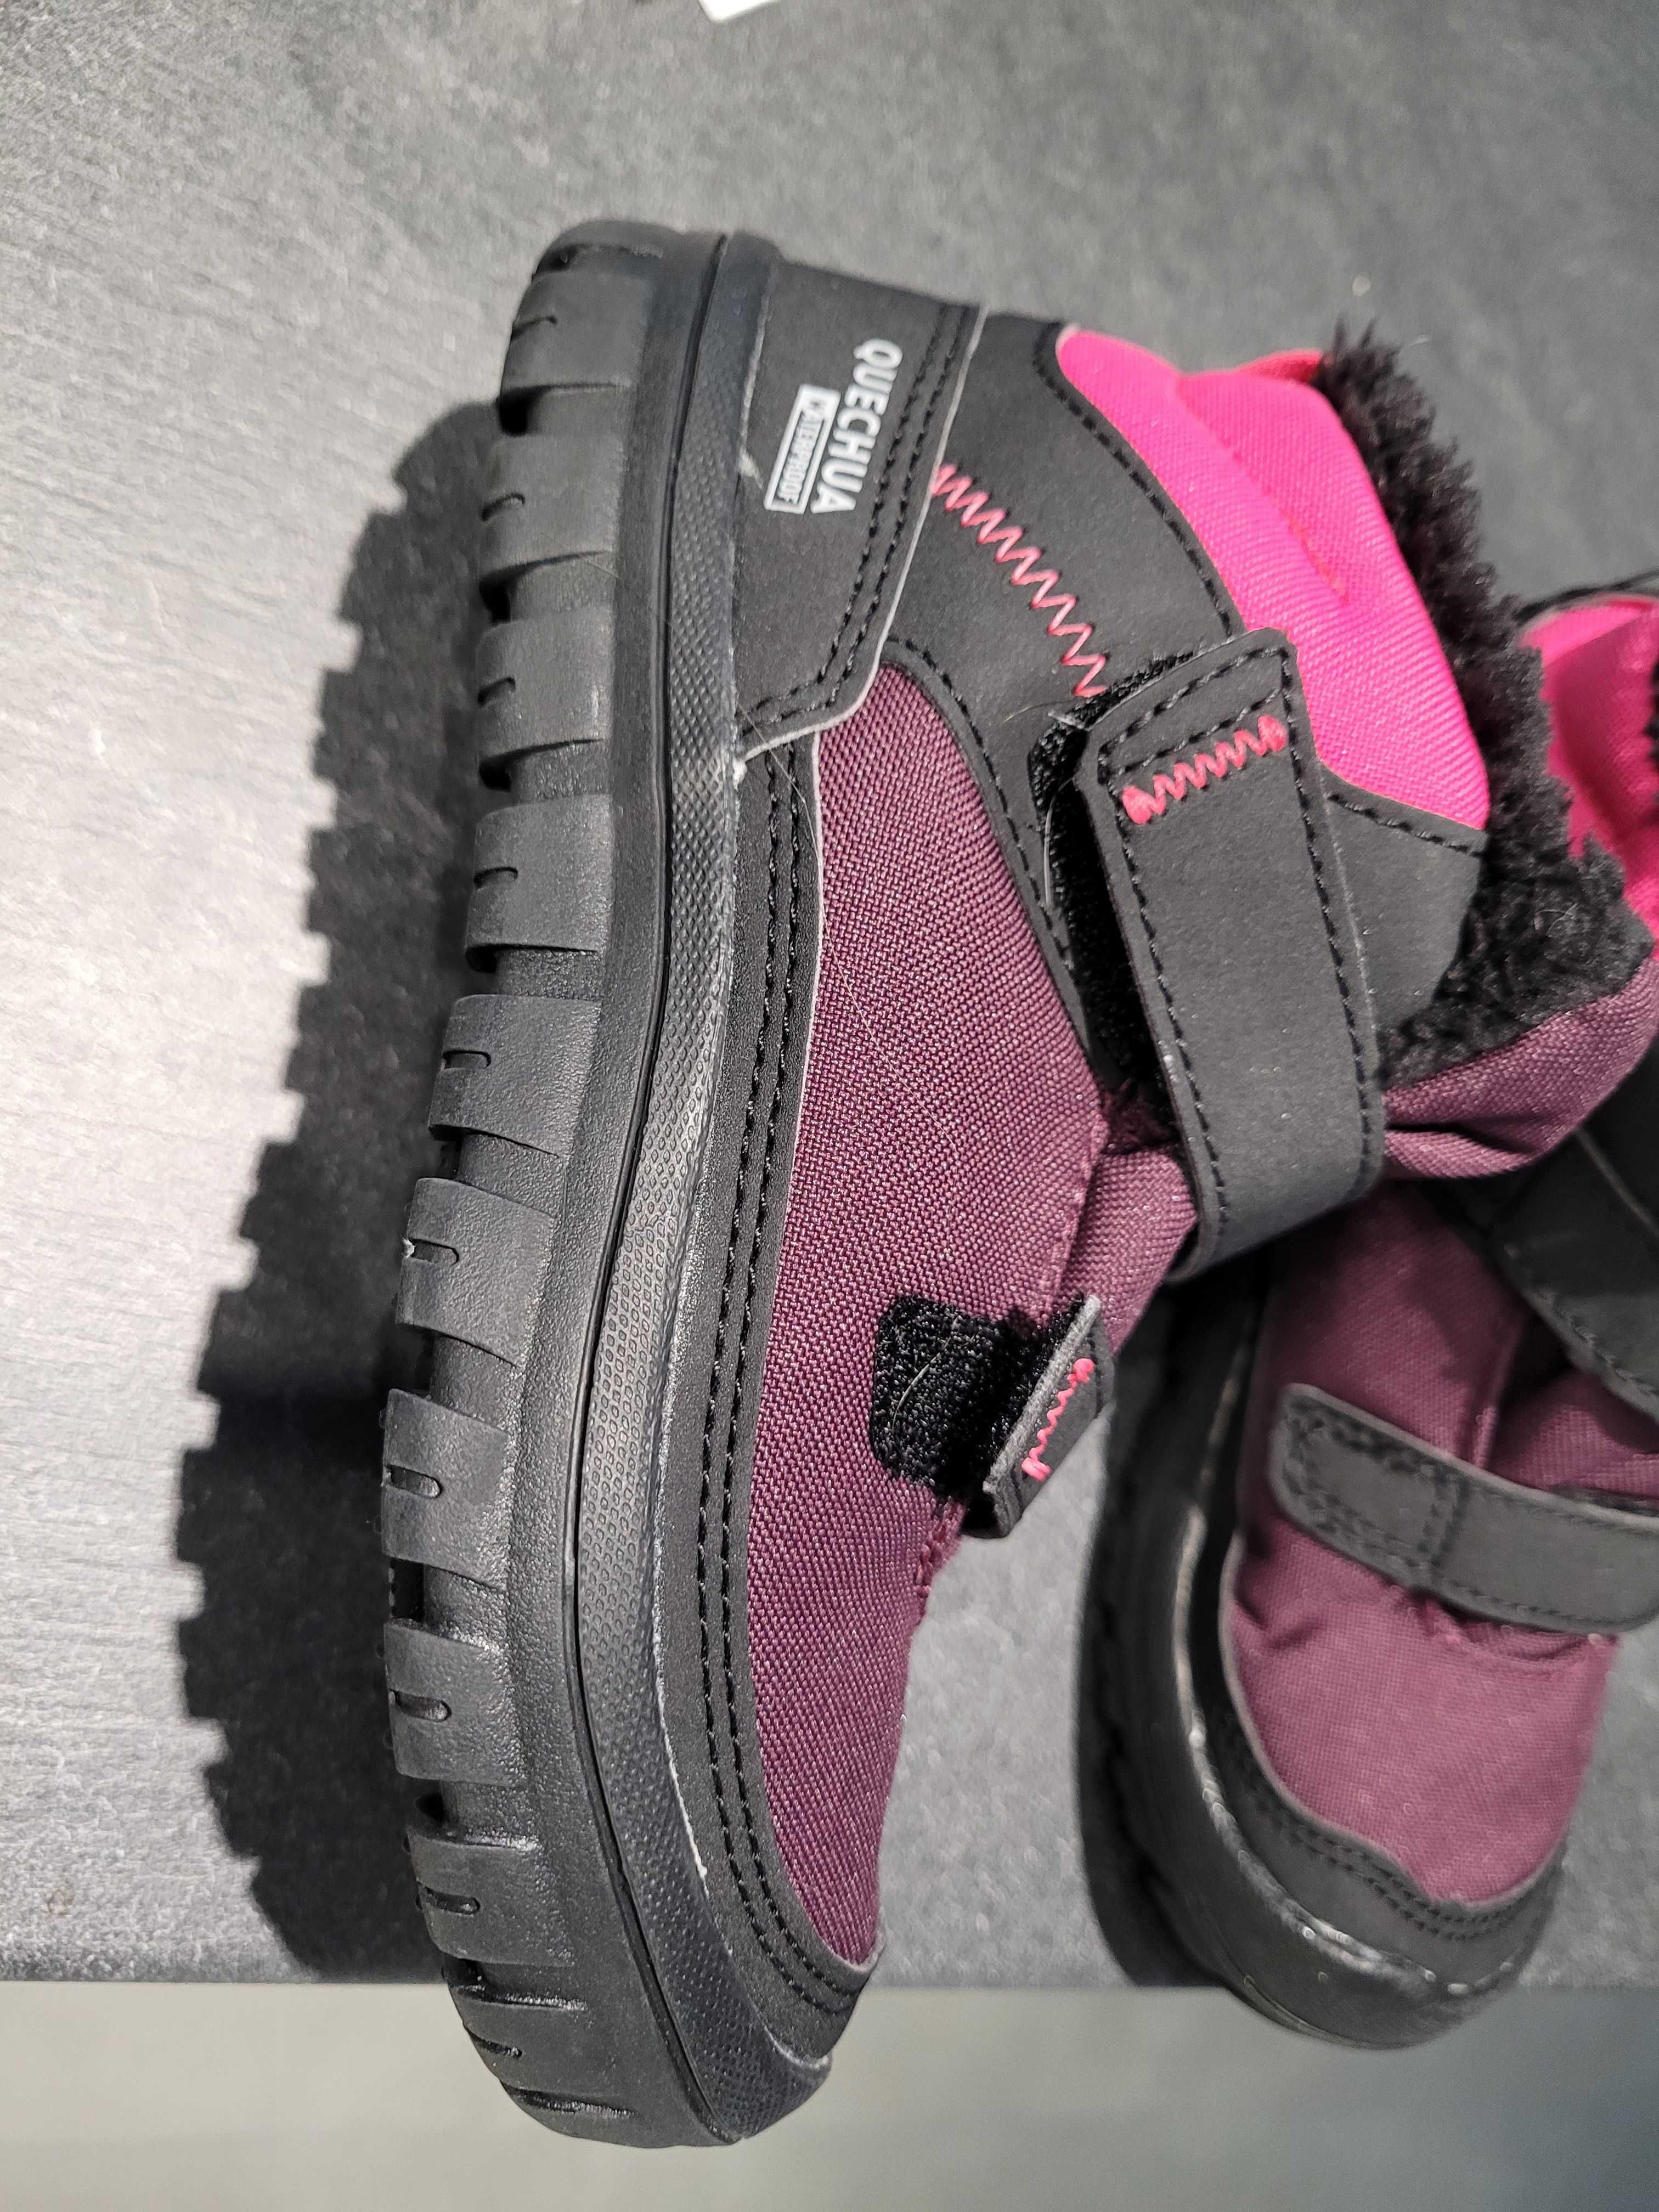 Buty zimowe Quechua SH100 pink r. 29 nowe dziewczęce